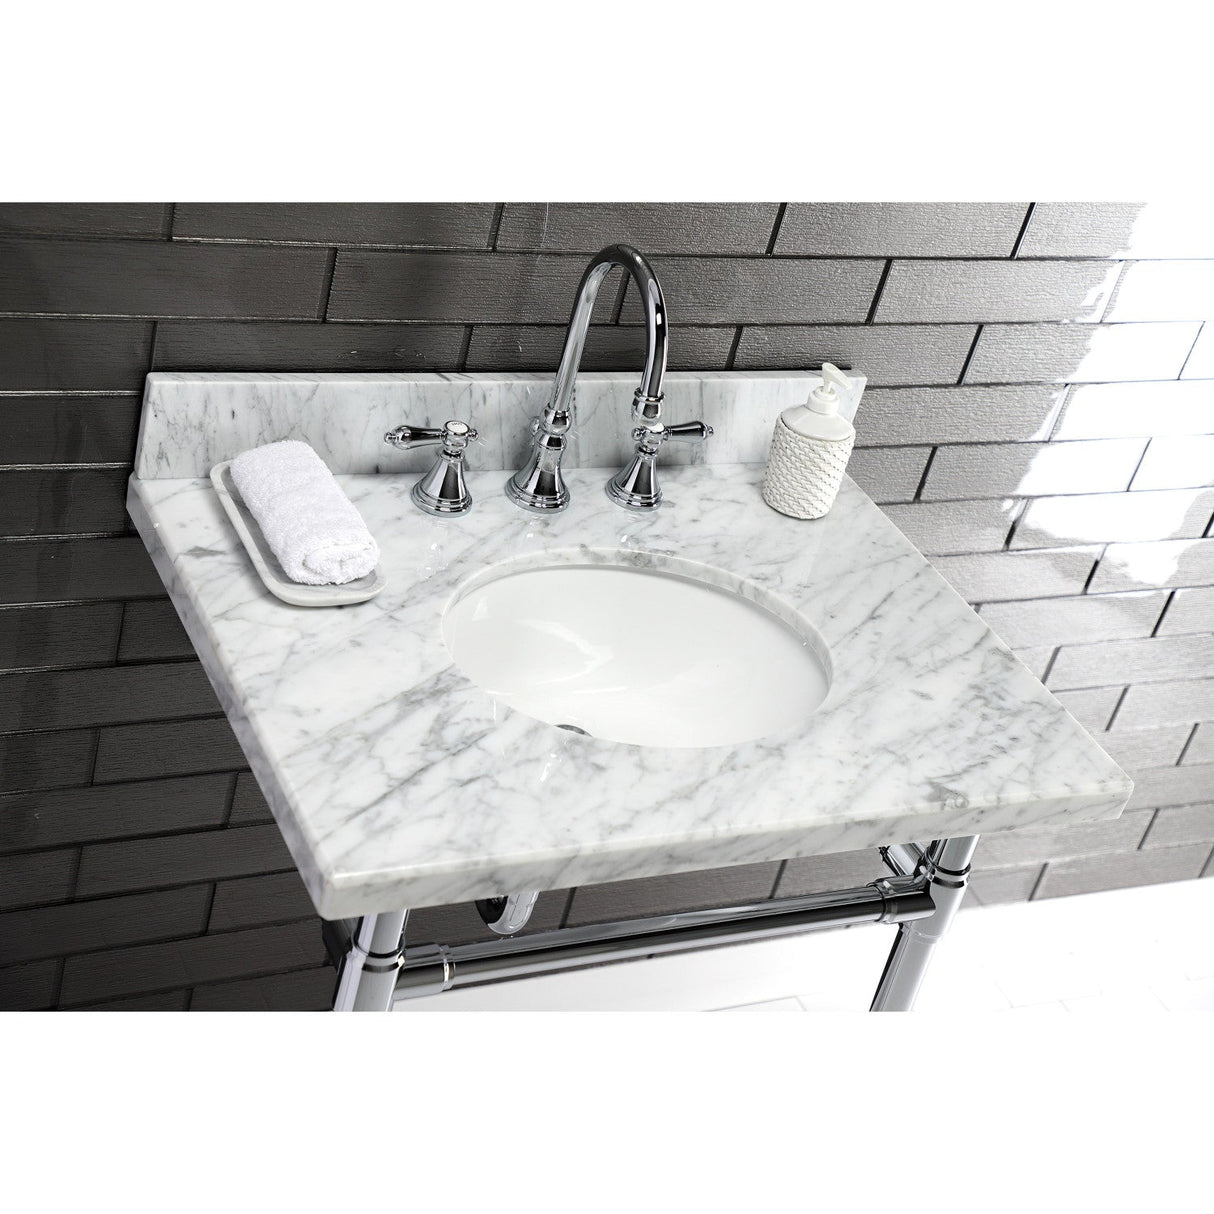 Templeton KVPB3022M38 Marble Vanity Sink Top, Carrara Marble